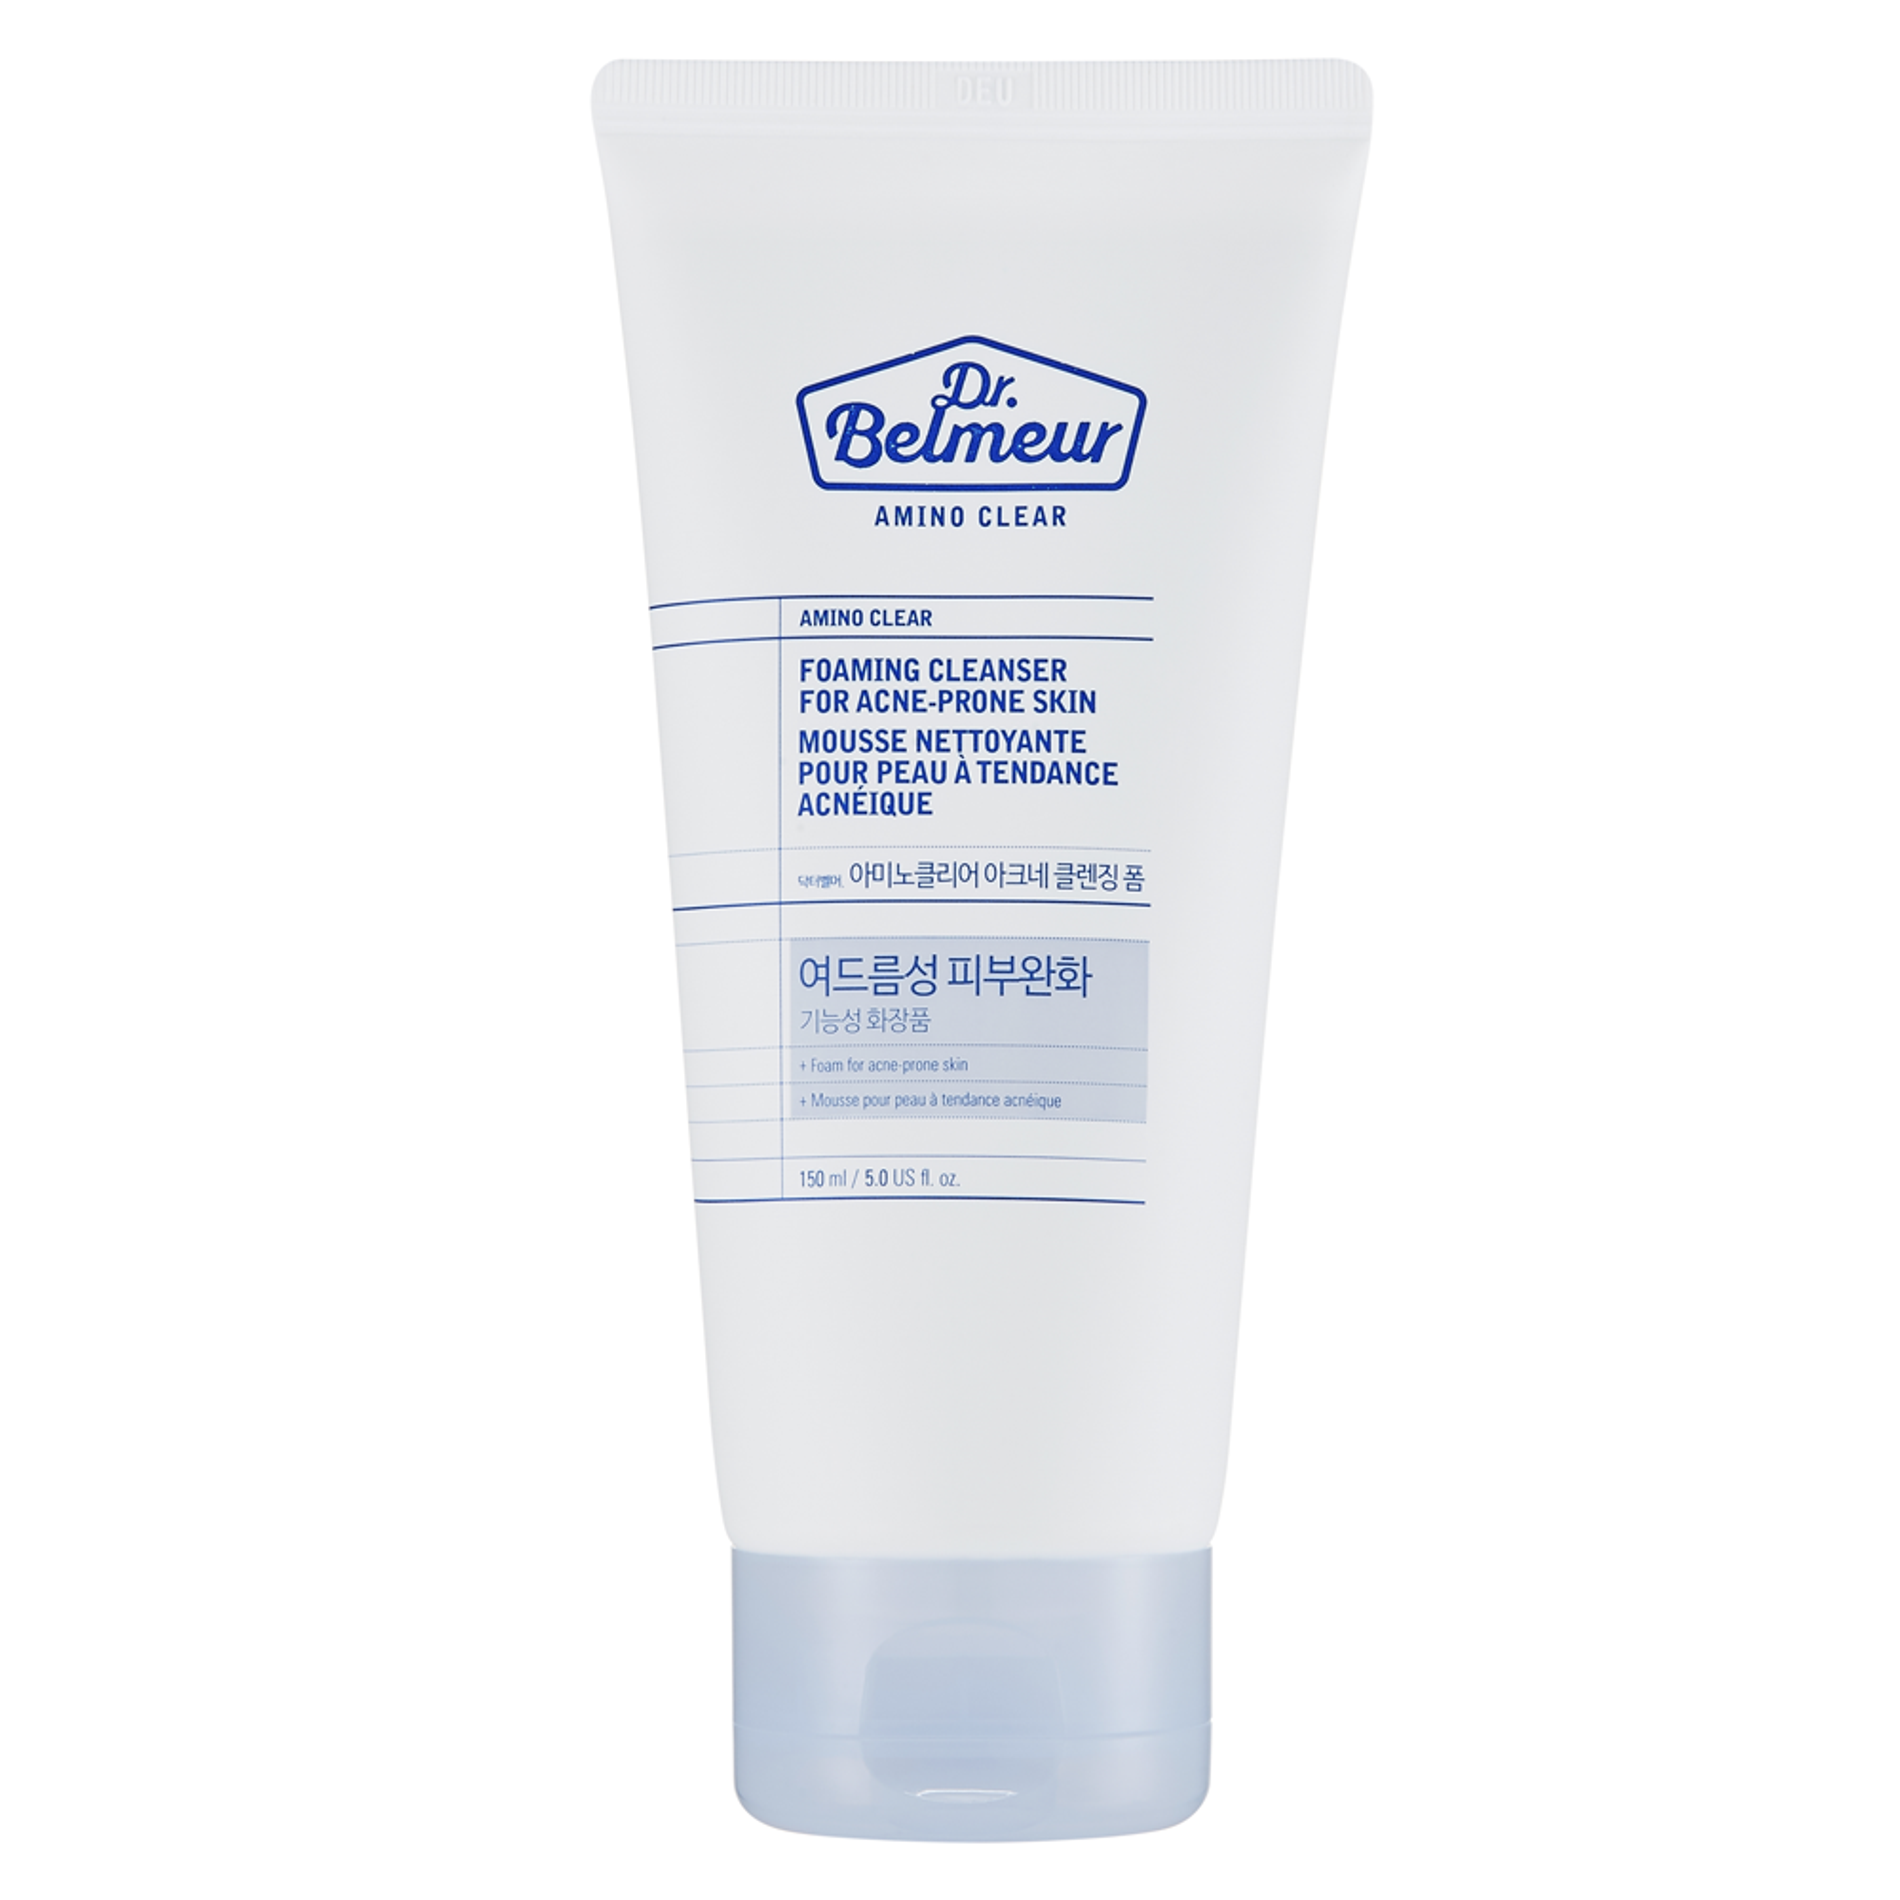 gift-sua-rua-mat-danh-cho-da-mun-dr-belmeur-amino-clear-foaming-cleanser-for-acne-prone-skin-150ml-2